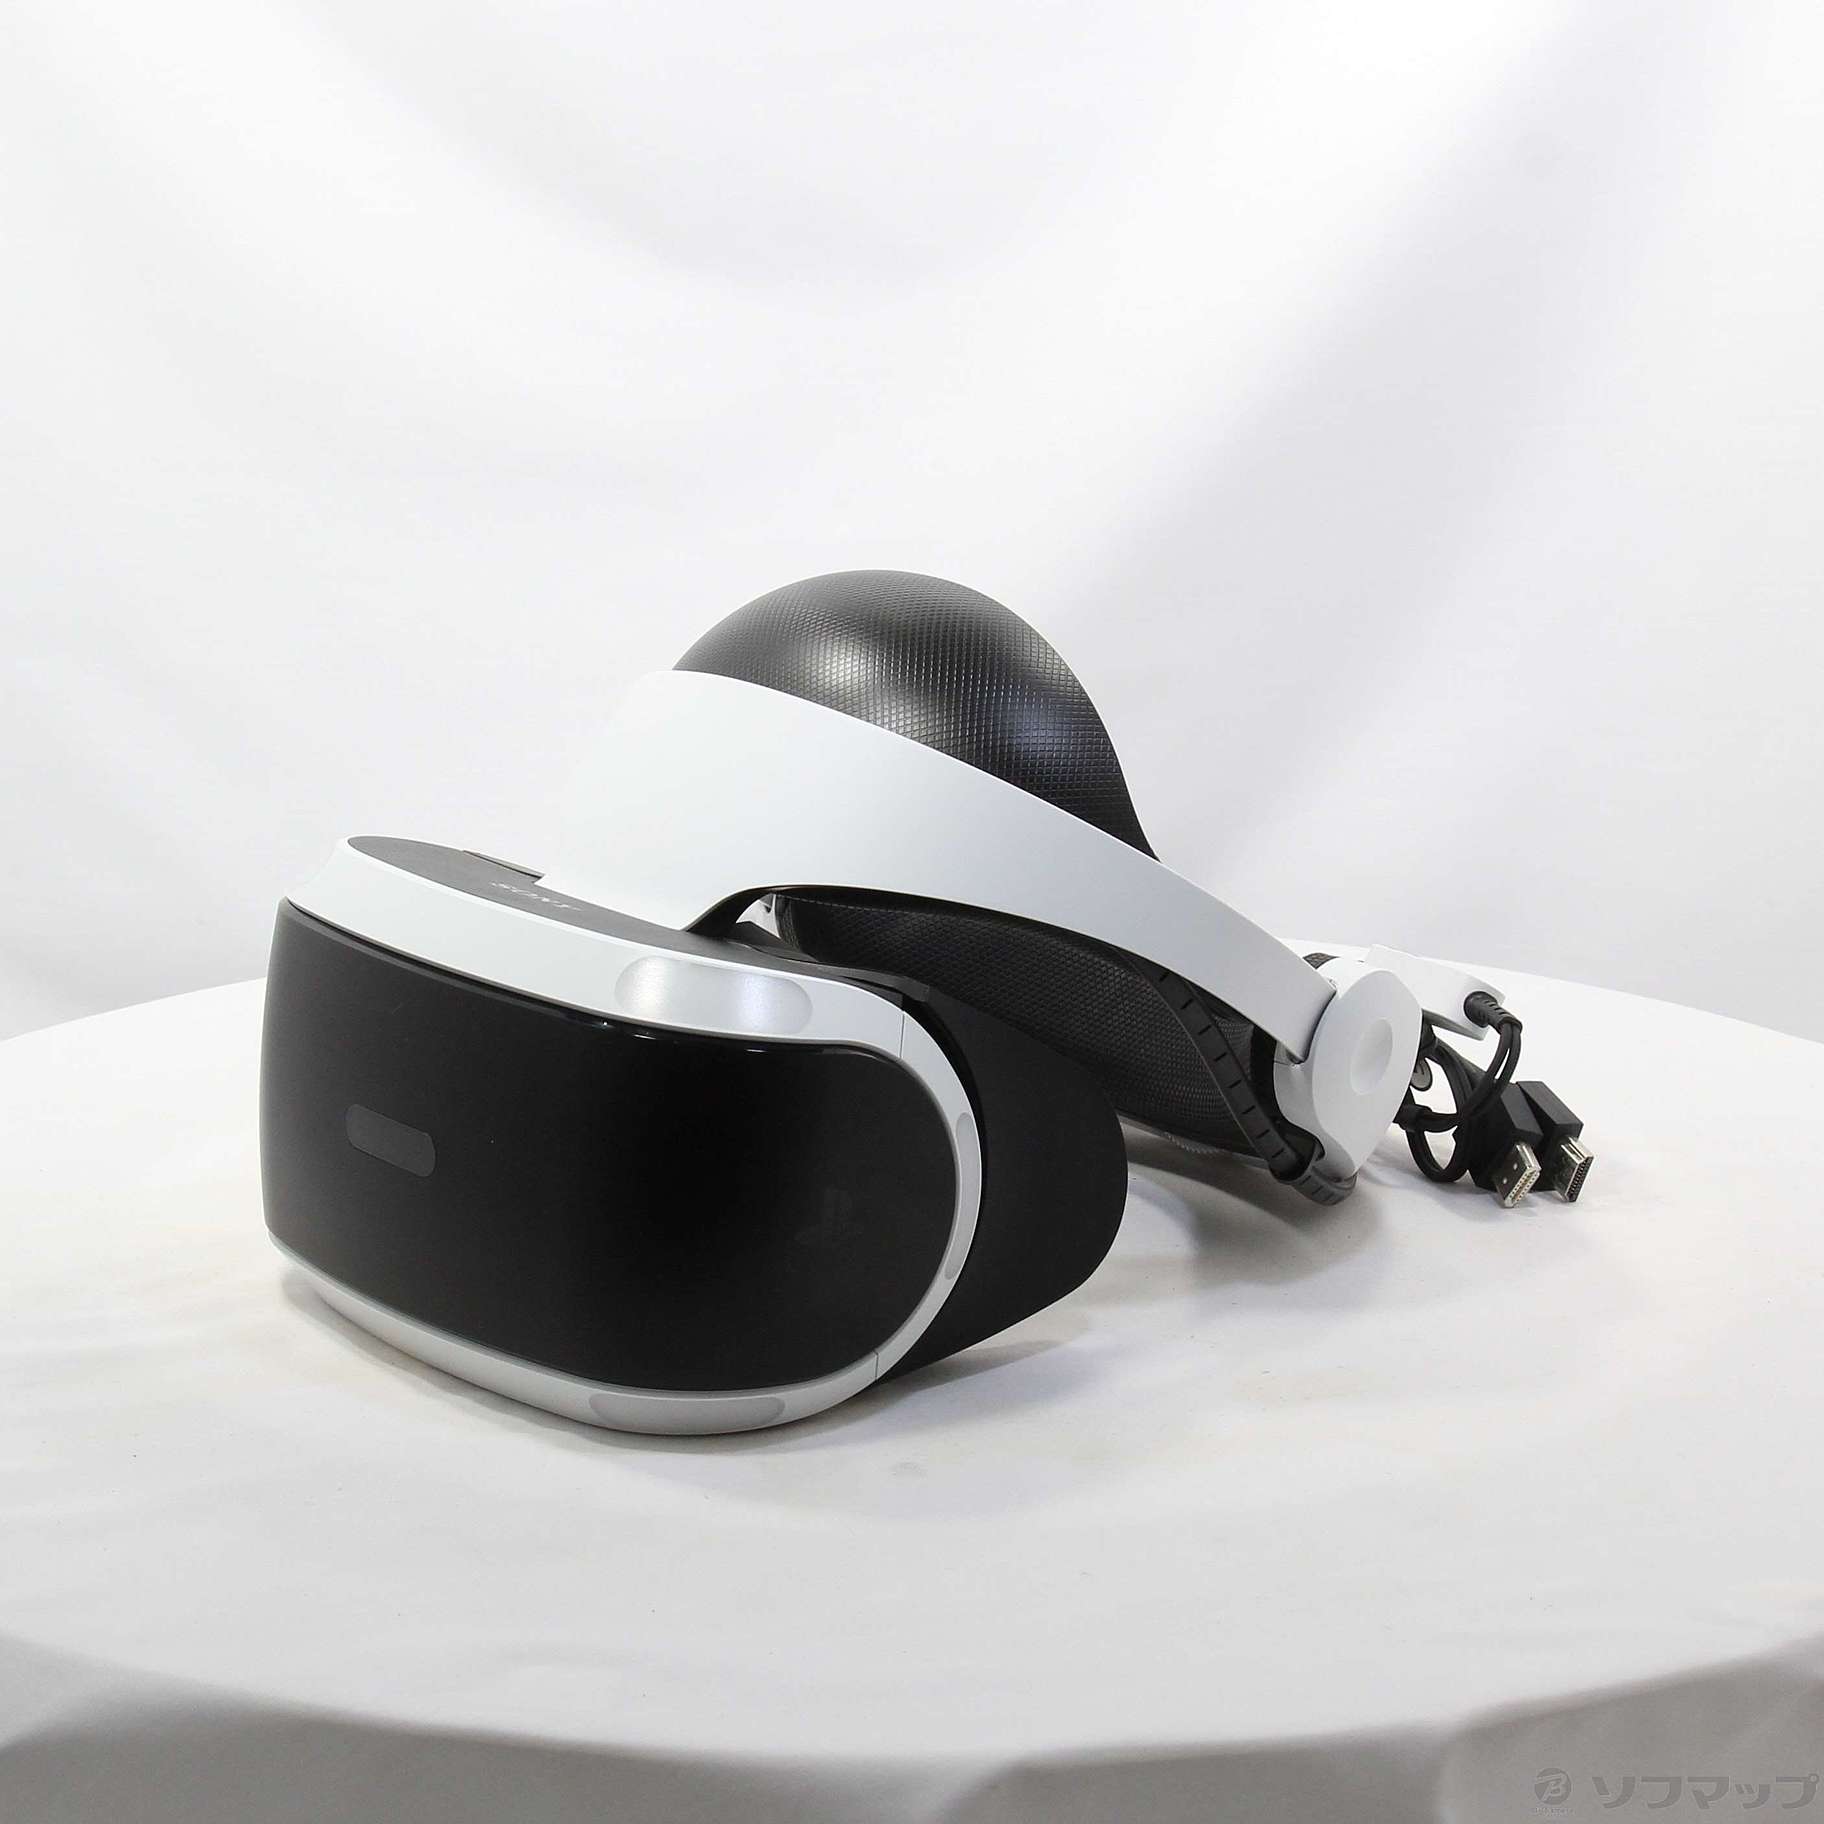 〔中古品〕 PlayStation VR PlayStation Camera 同梱版 CUHJ-16001